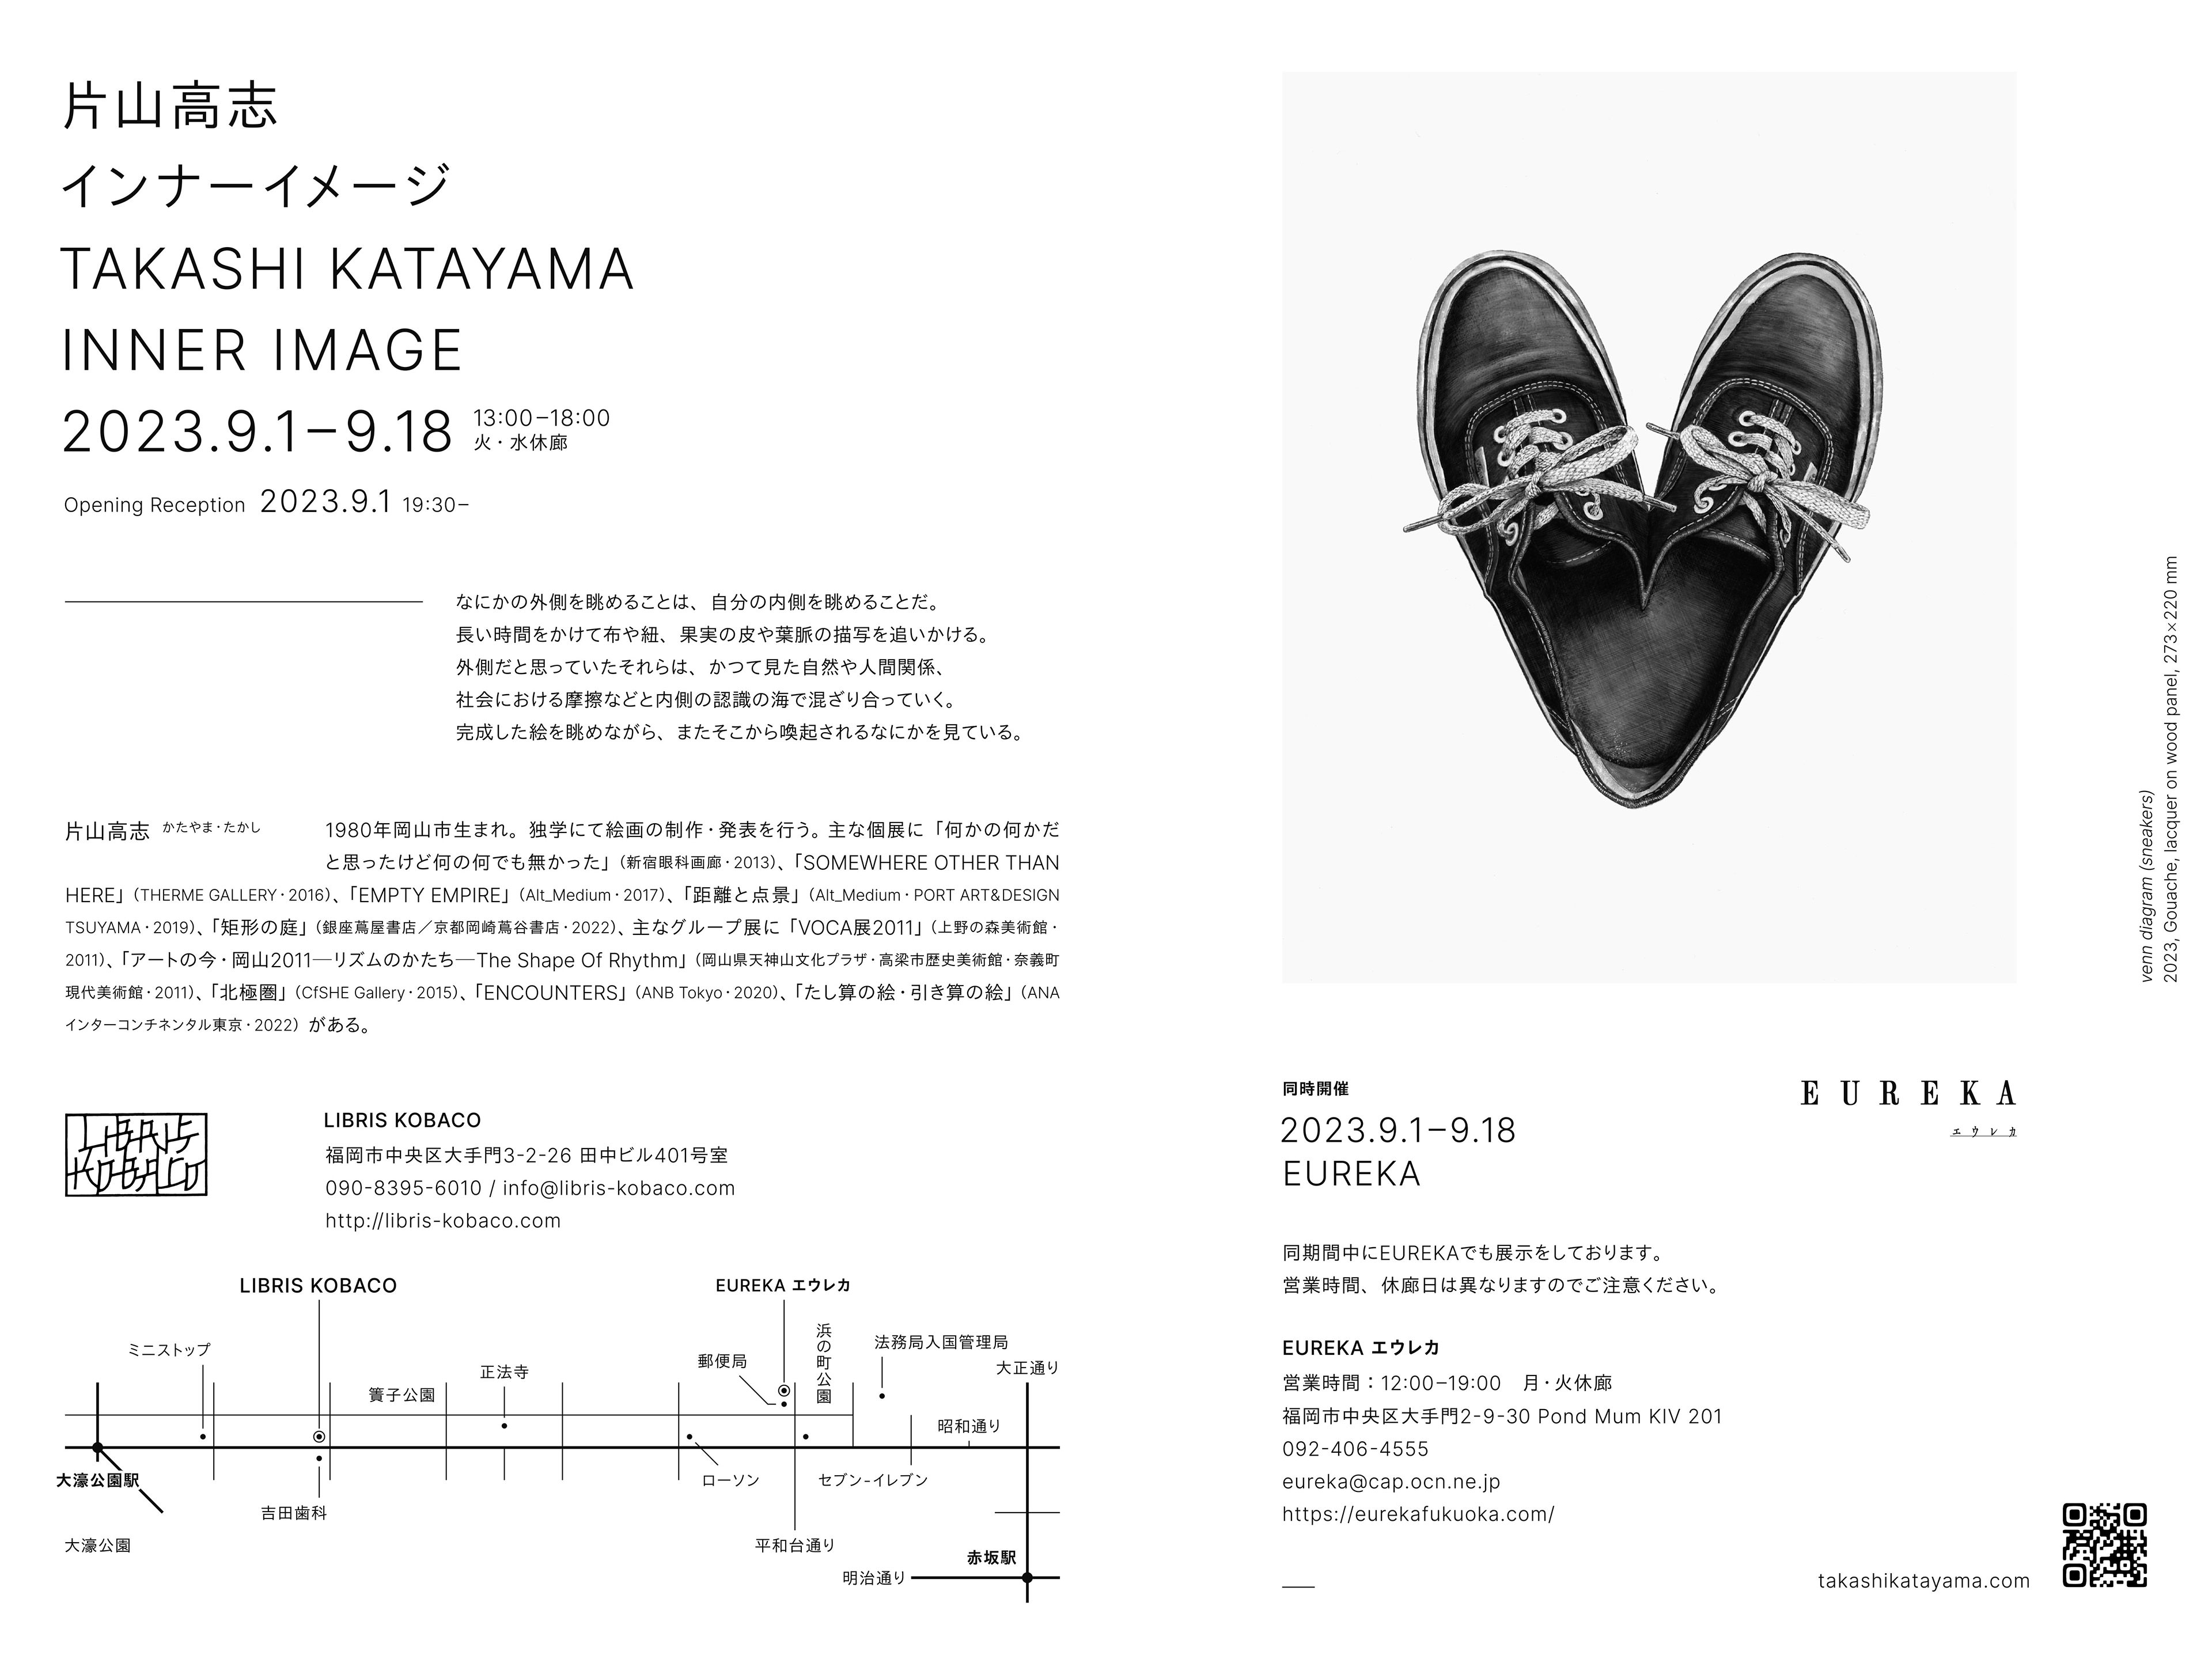 片山高志「INNER IMAGE」 Takashi Katayama “INNER IMAGE” - LIBRIS KOBACO, EUREKA エウレカ